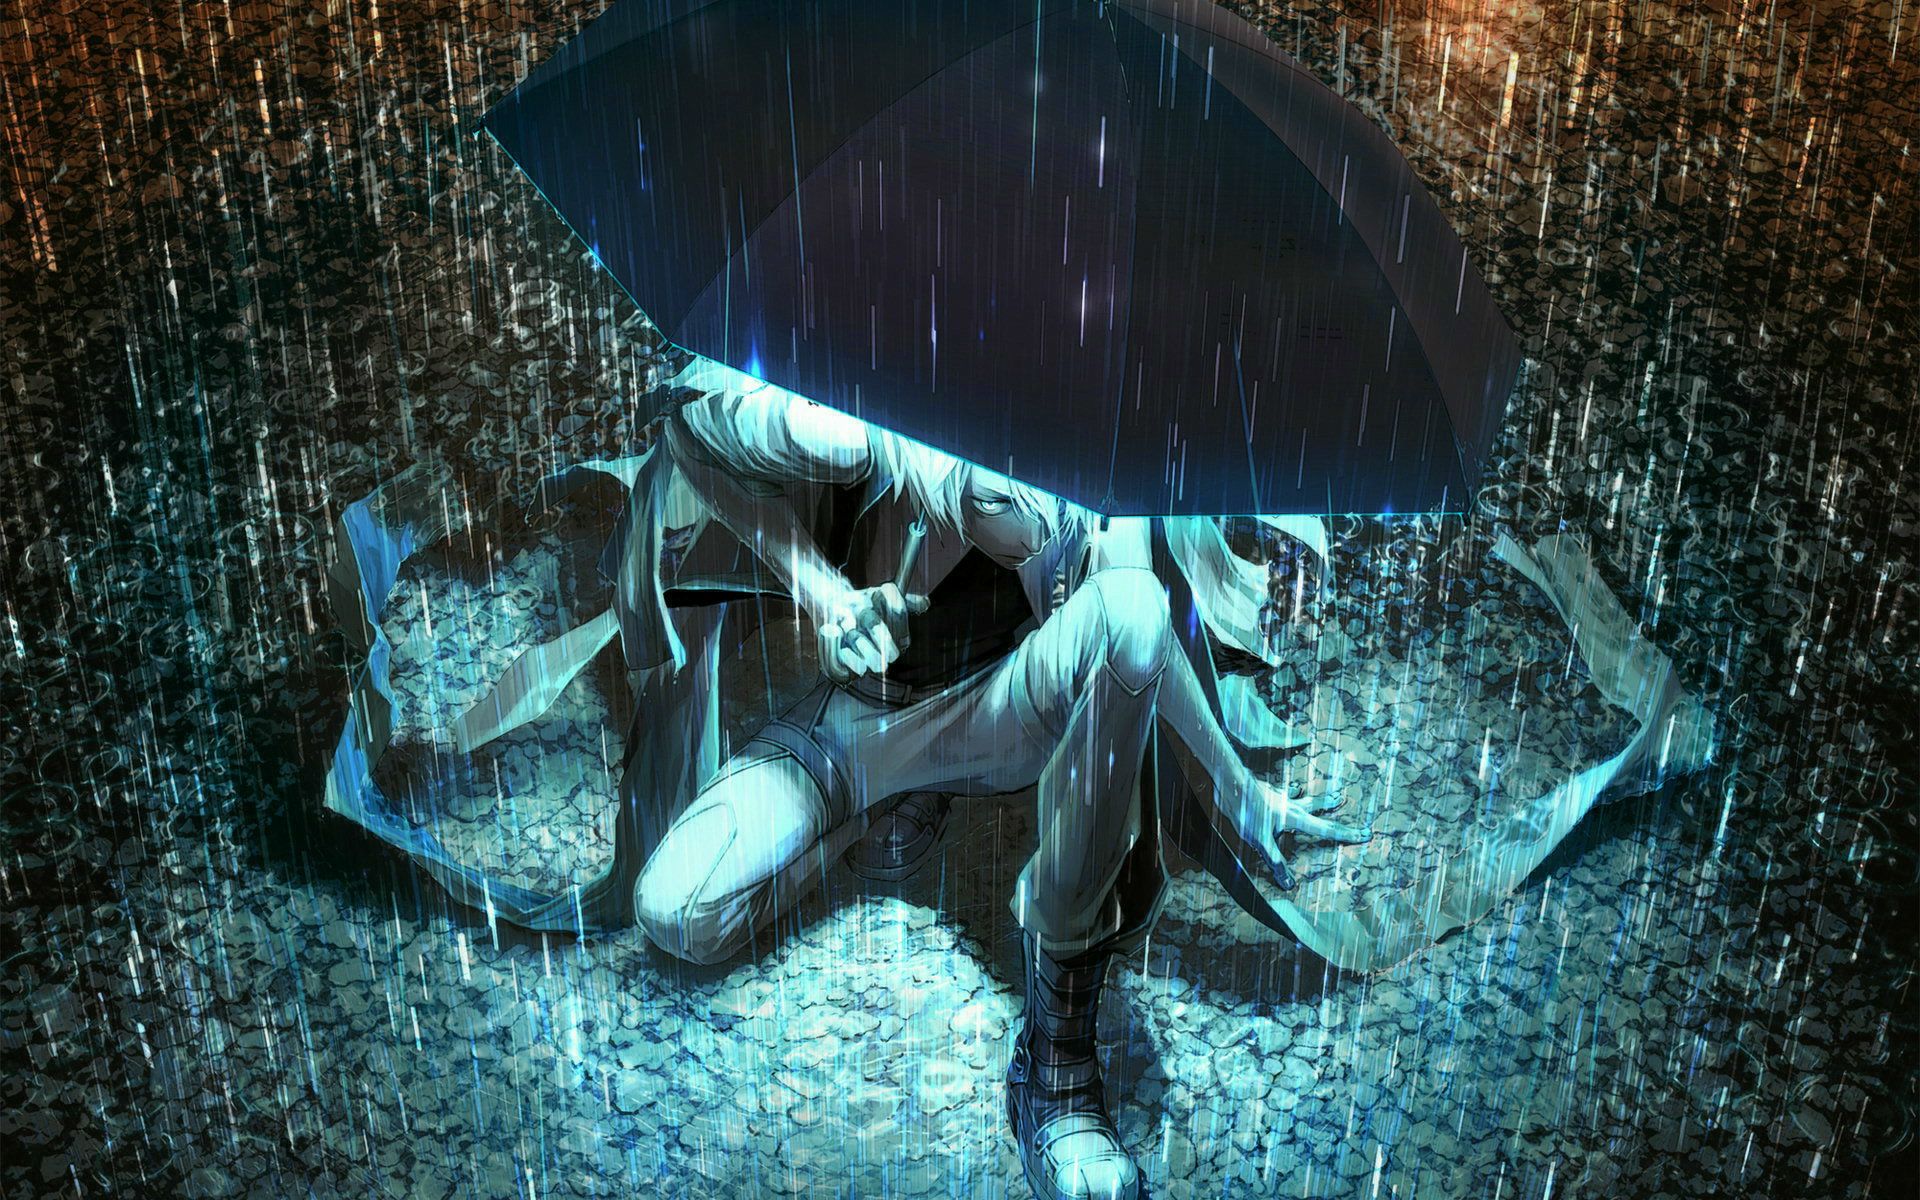 Mist Rain Anime Wallpaper. Anime